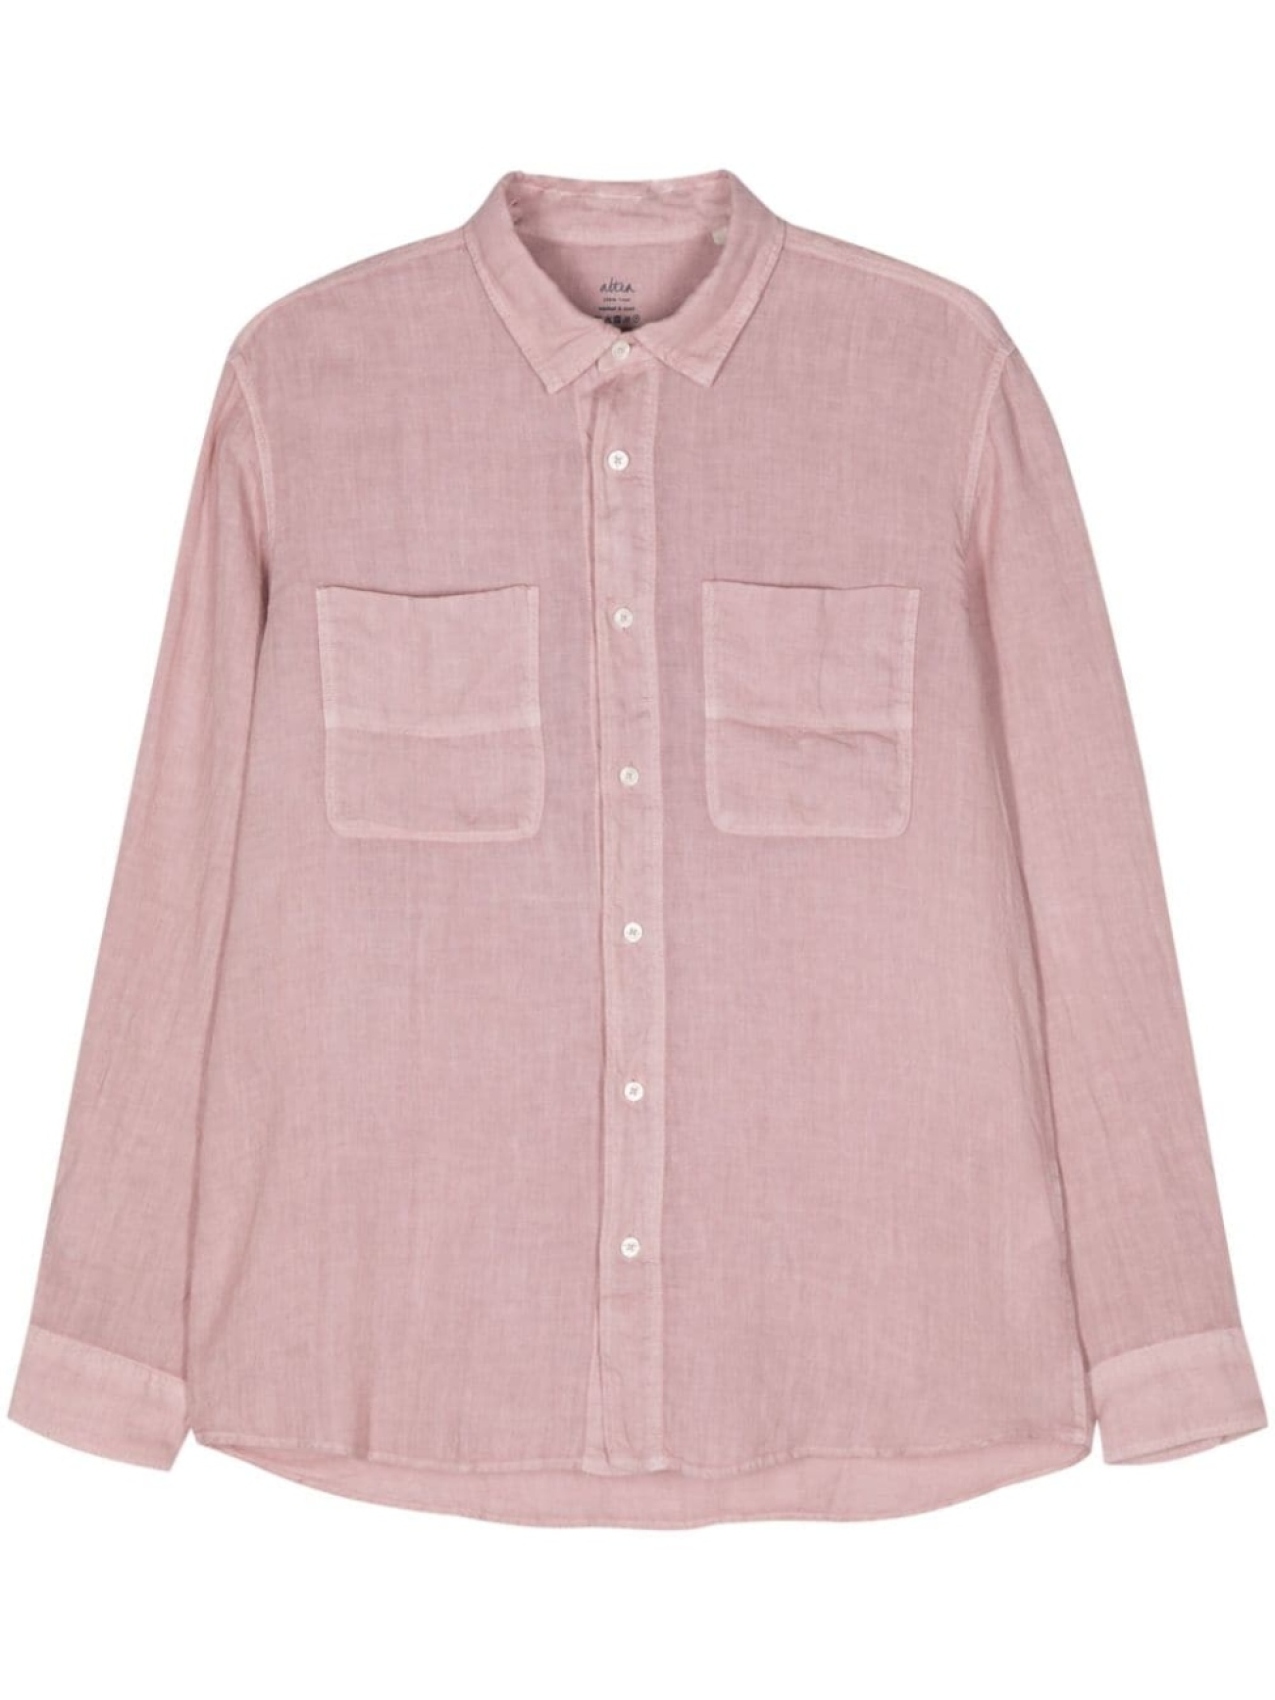 Льняная рубашка из ткани шамбре Altea, розовый